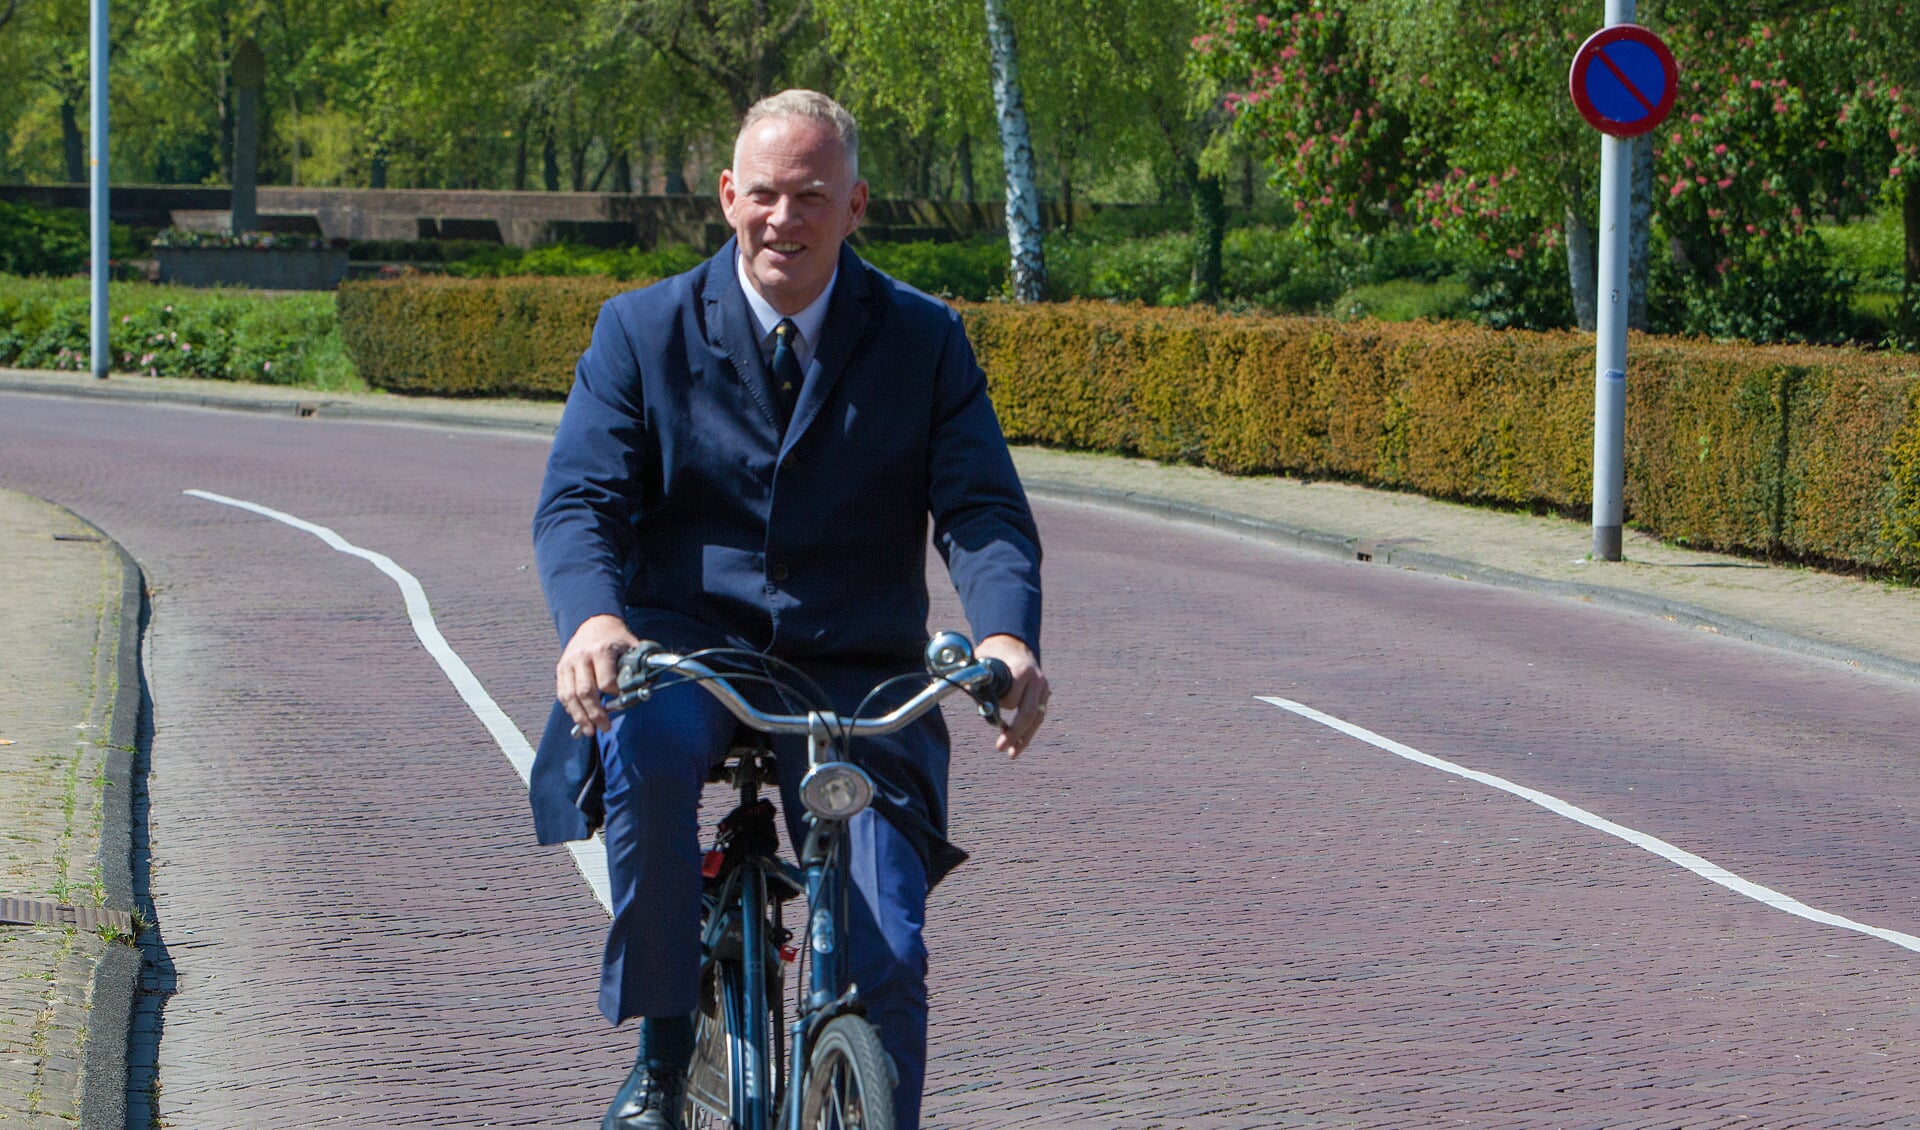 De burgemeester pakt graag de fiets.